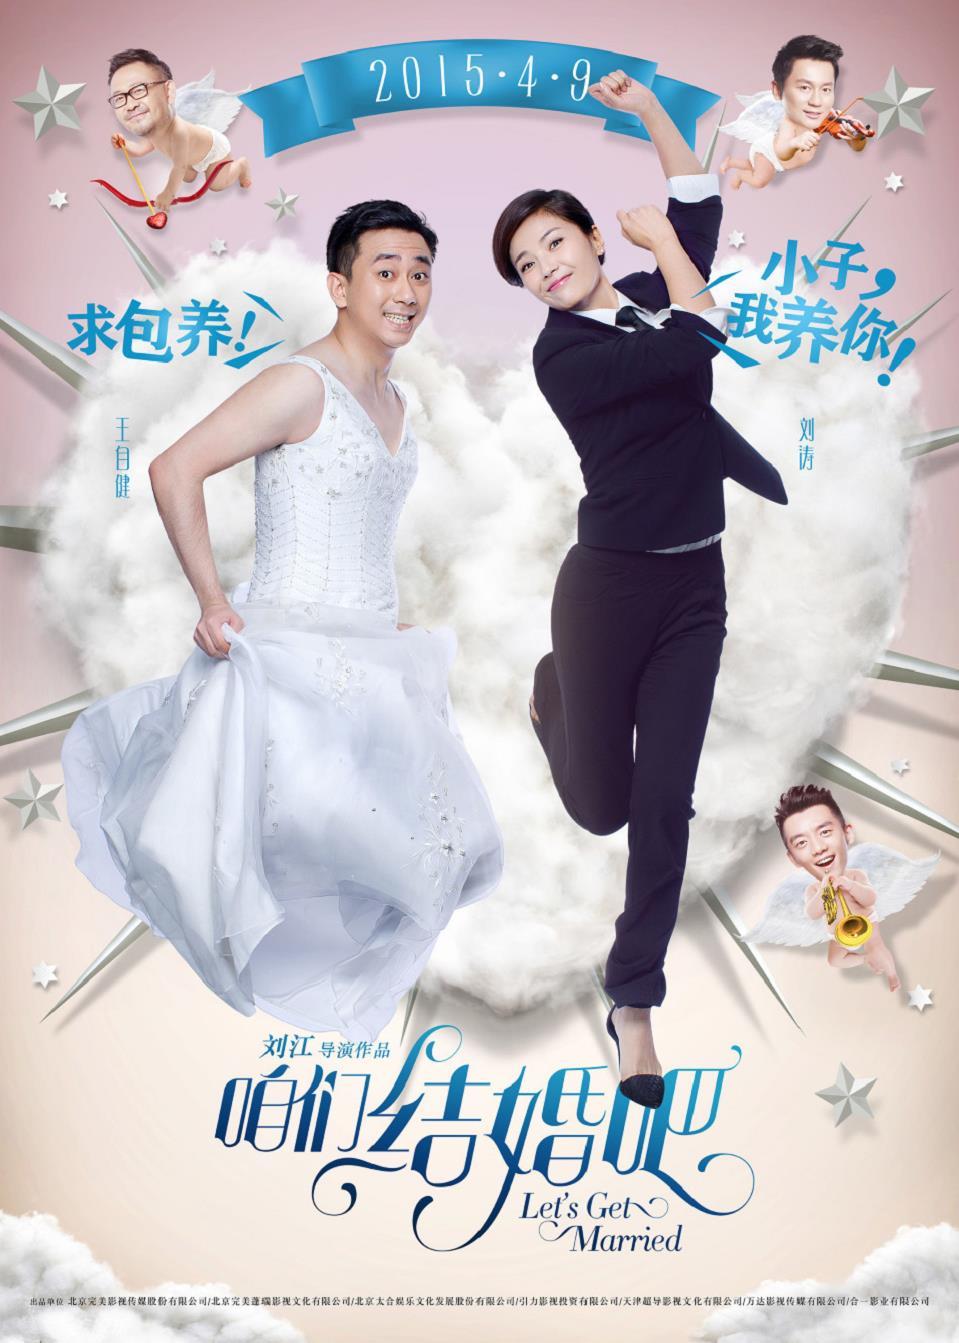 《咱们结婚吧》反串版海报 男撒娇女霸气,《咱们结婚吧》反串版海报-王自健刘涛